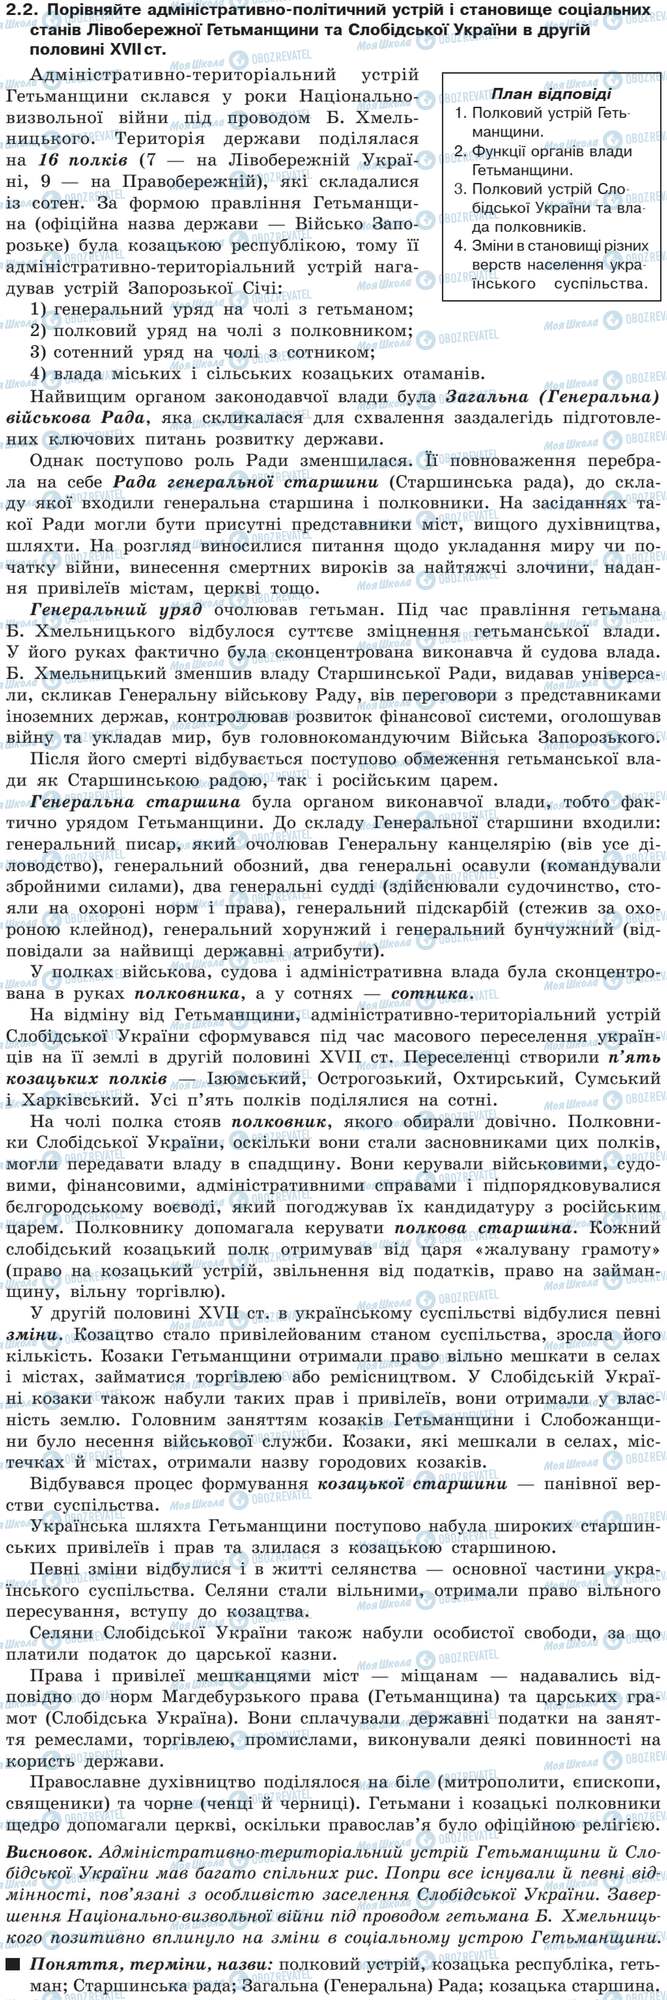 ДПА Історія України 9 клас сторінка 2.2